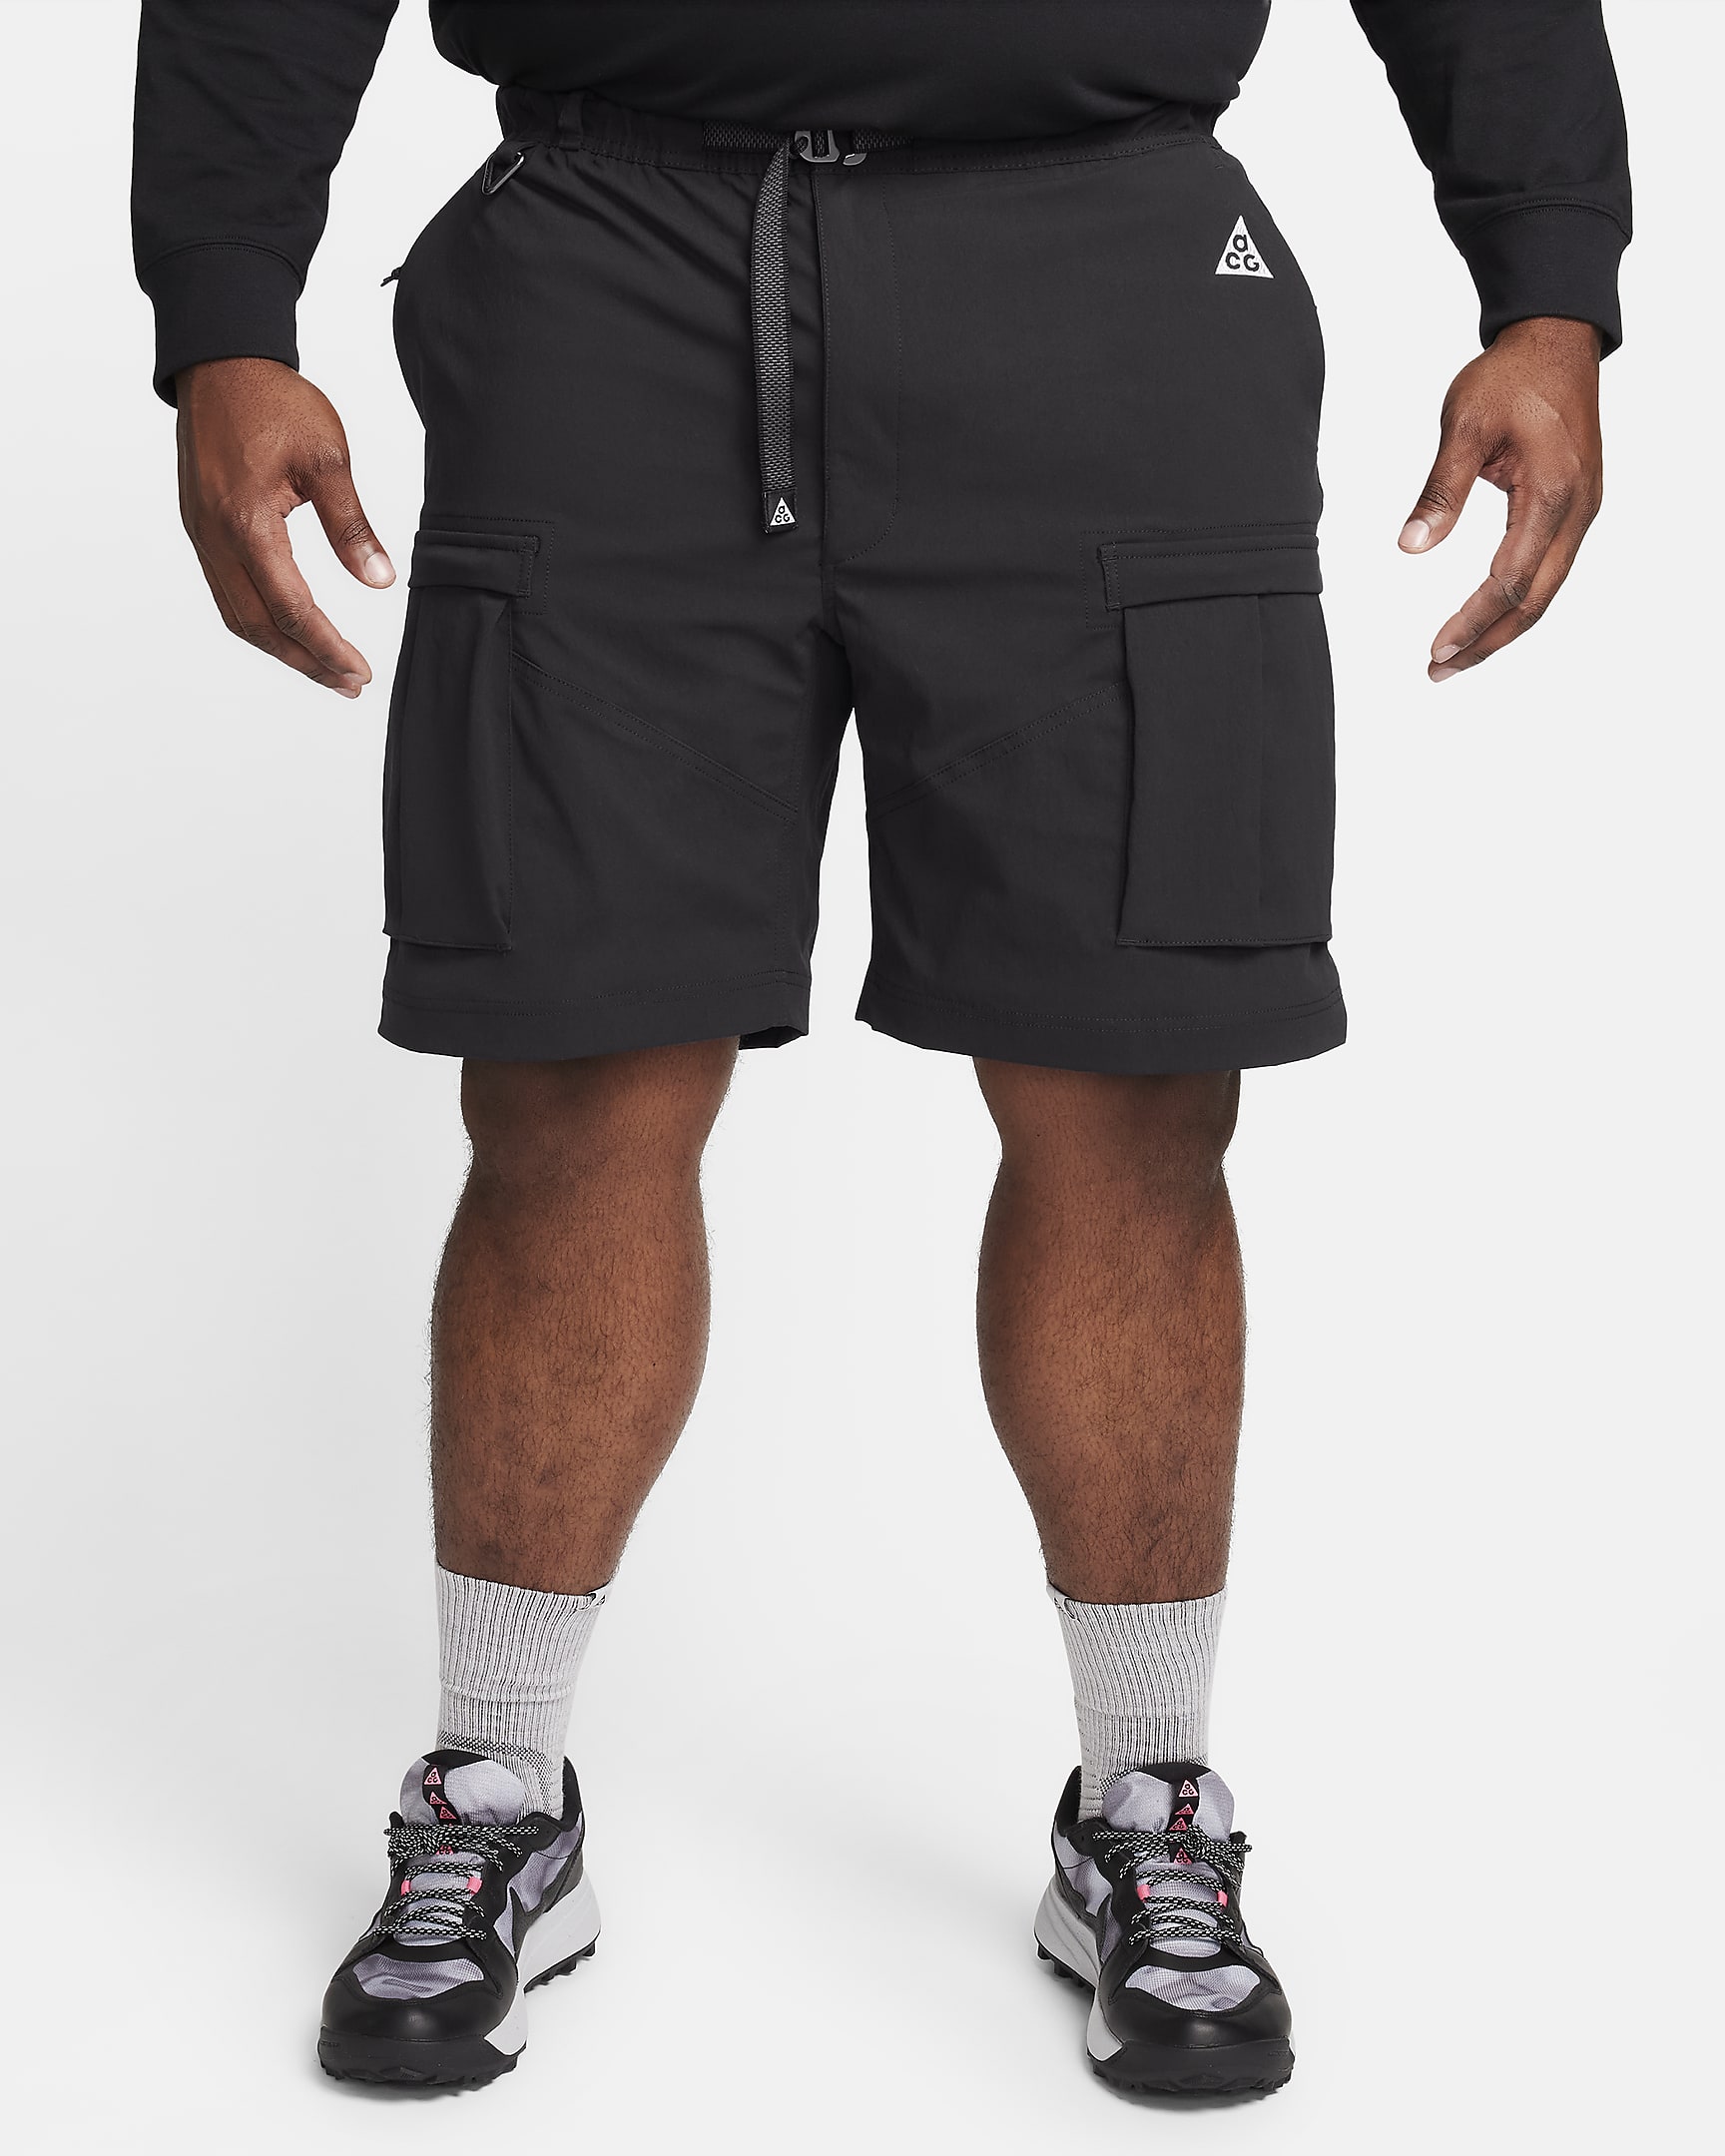 Nike ACG 'Smith Summit' Men's Cargo Trousers - Black/Anthracite/Summit White